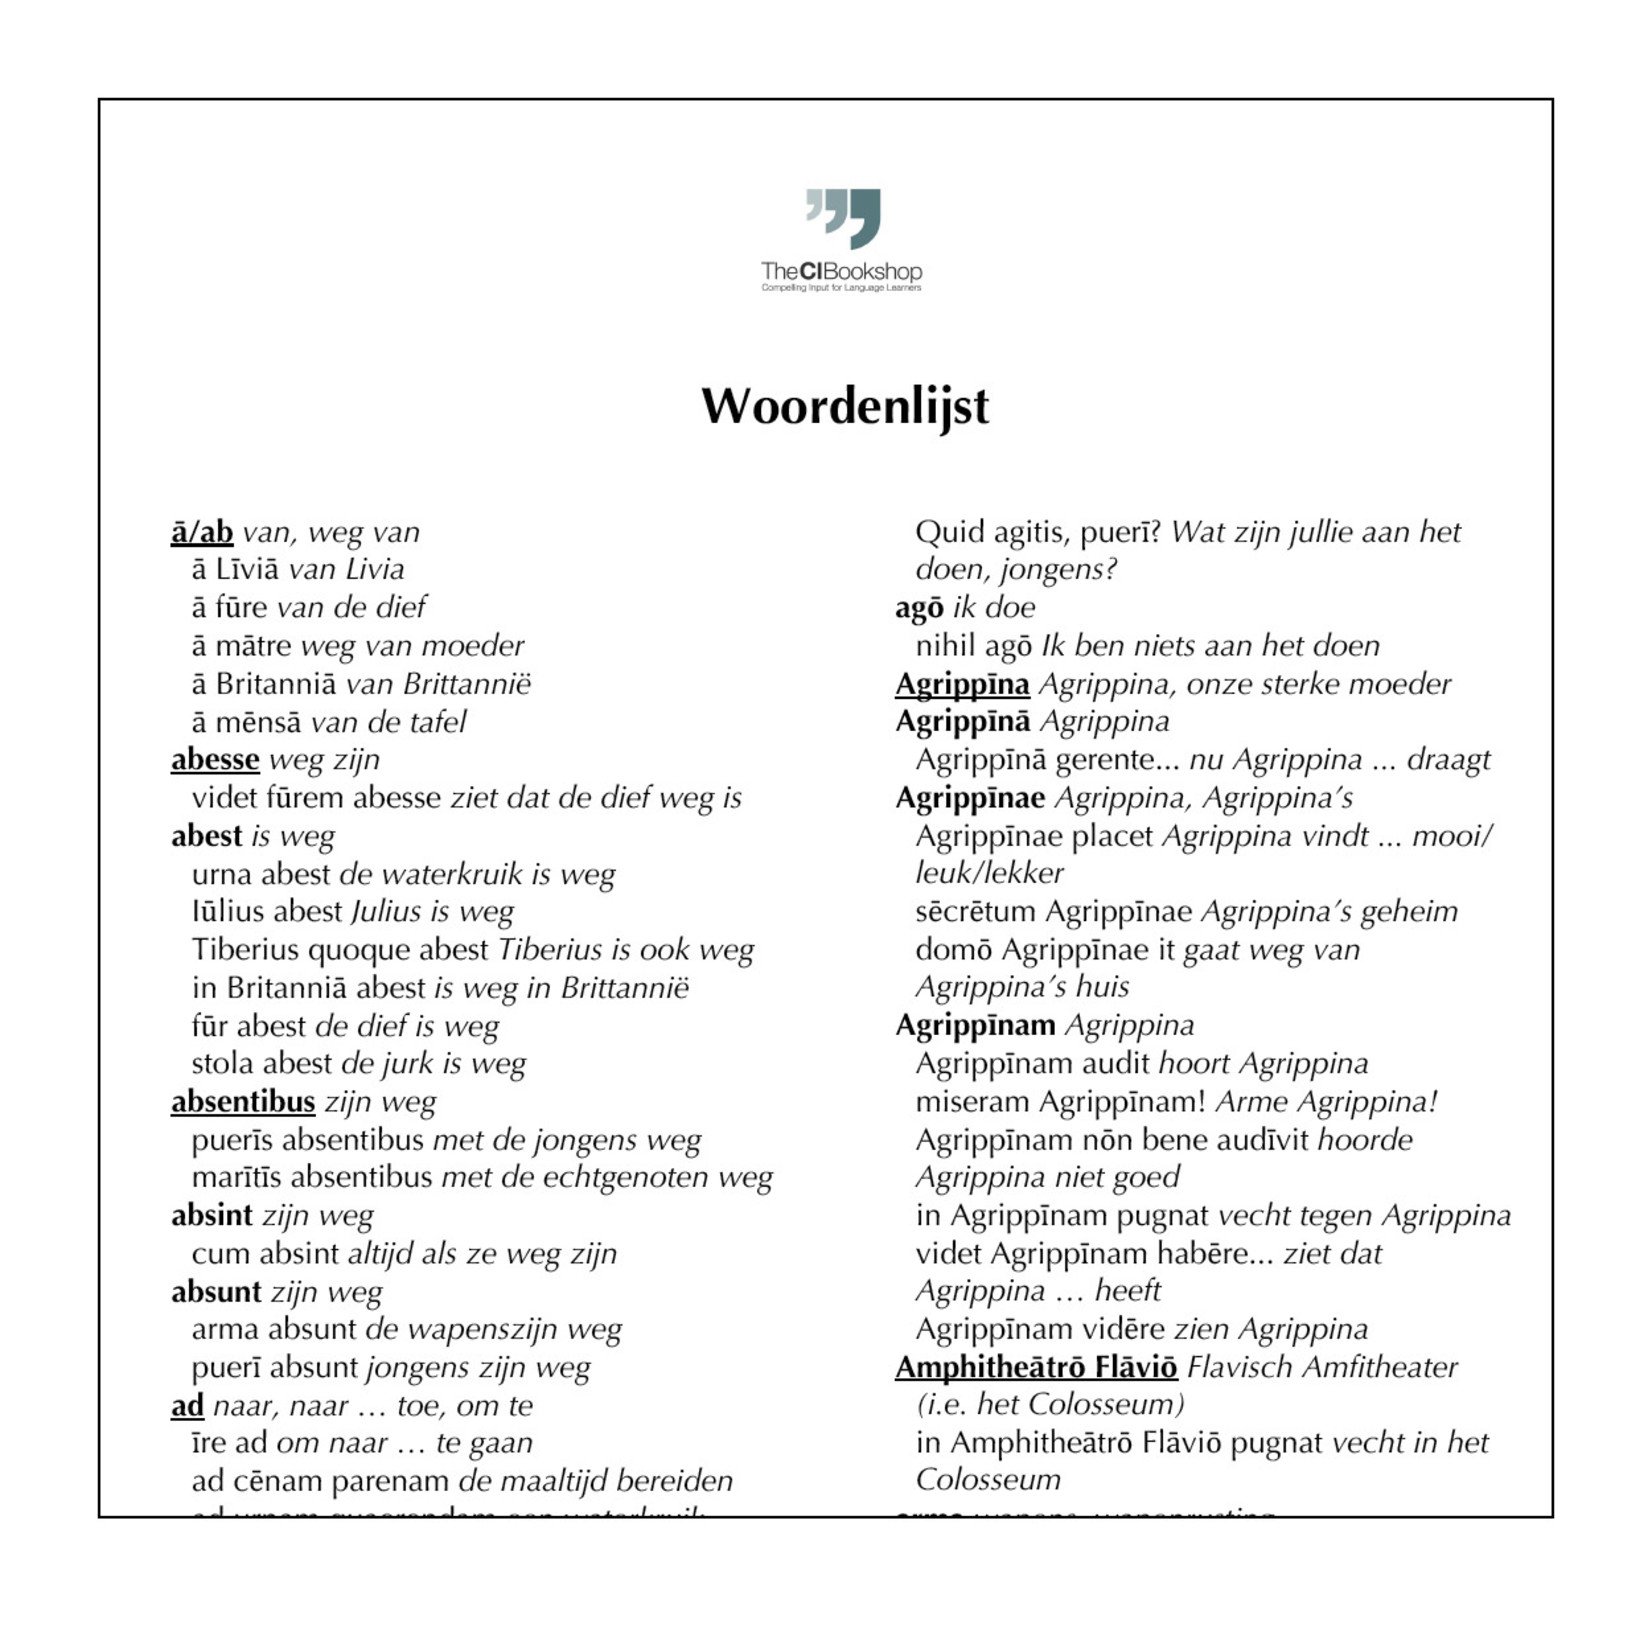 Dutch glossary for Syra et animālia